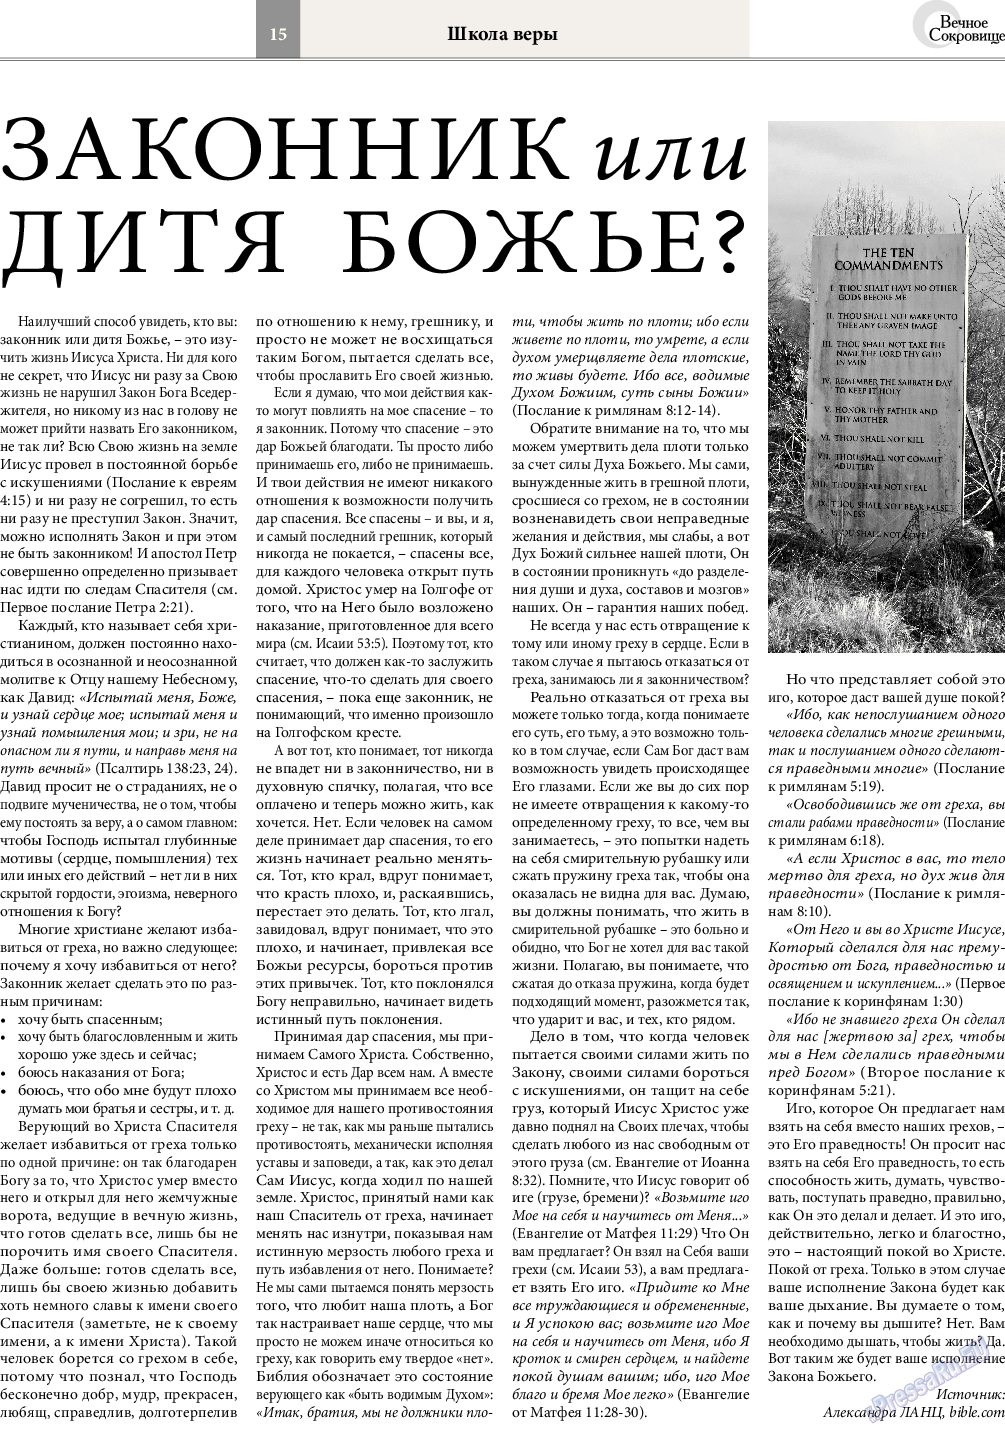 Вечное сокровище, газета. 2016 №1 стр.15